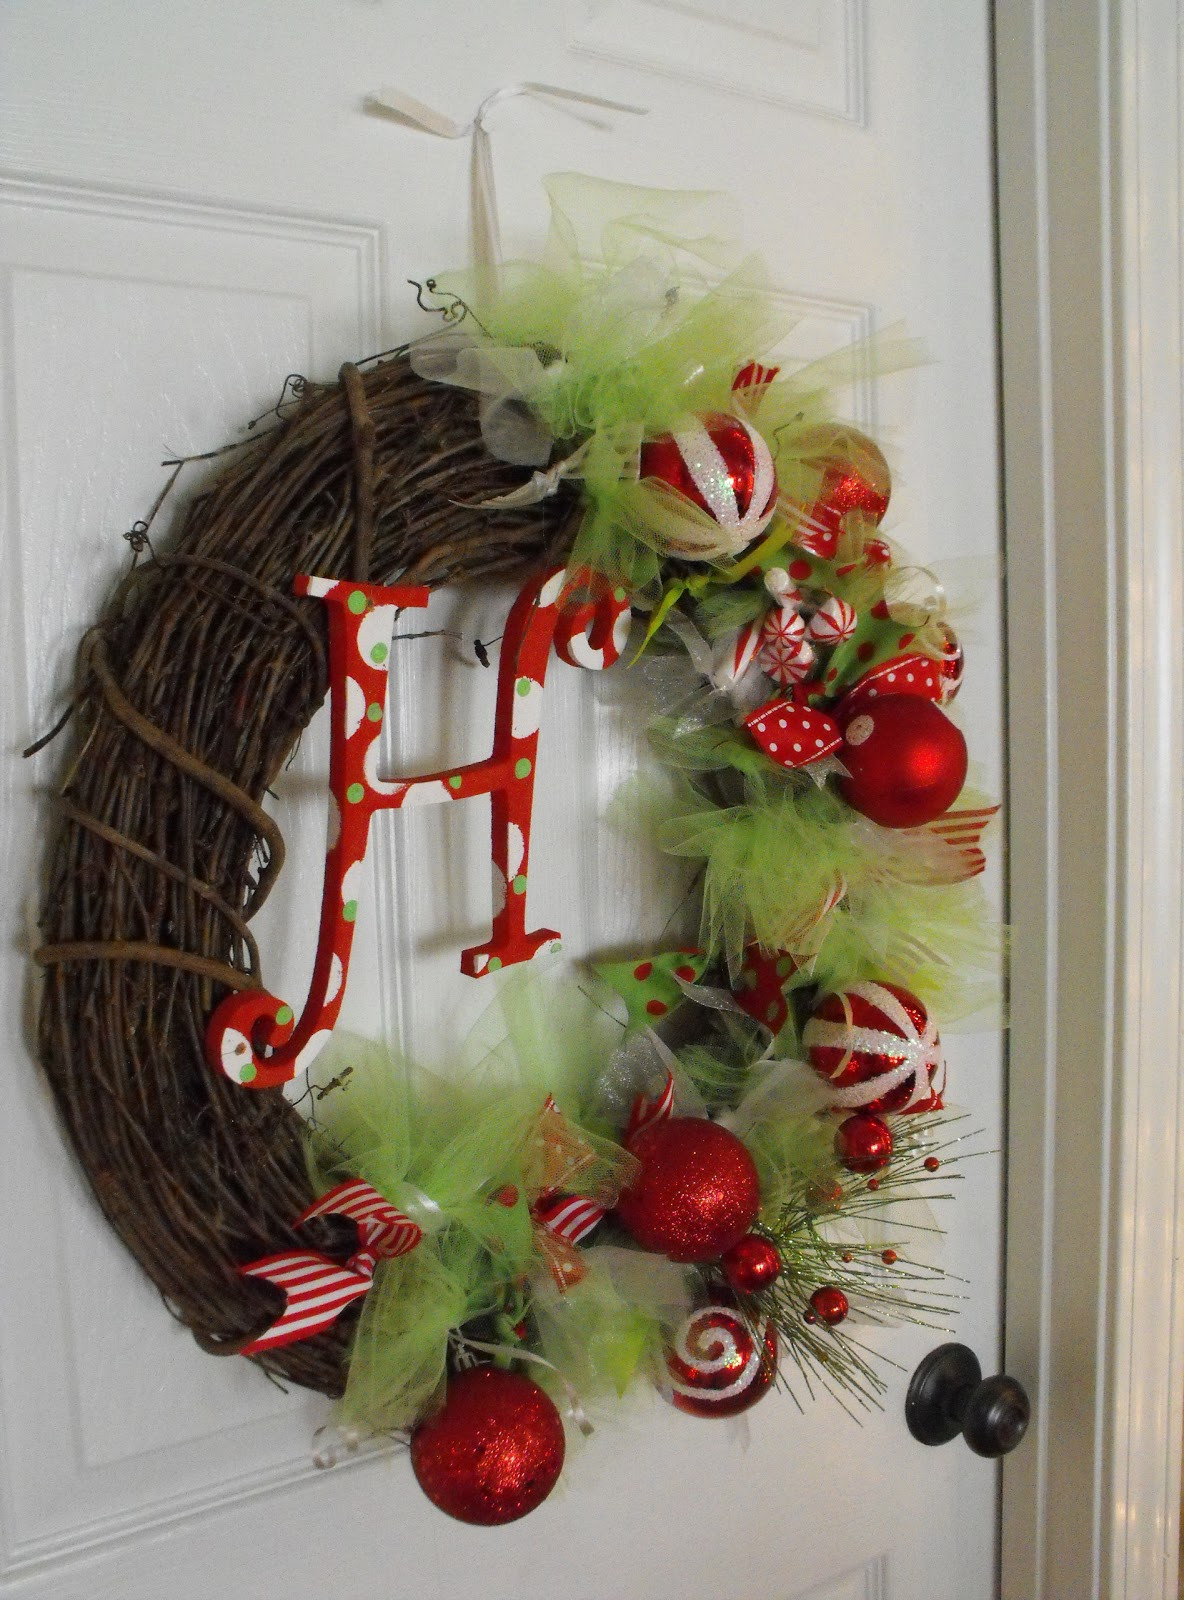 DIY Christmas Wreath Ideas
 Susie Harris DIY Christmas Wreath